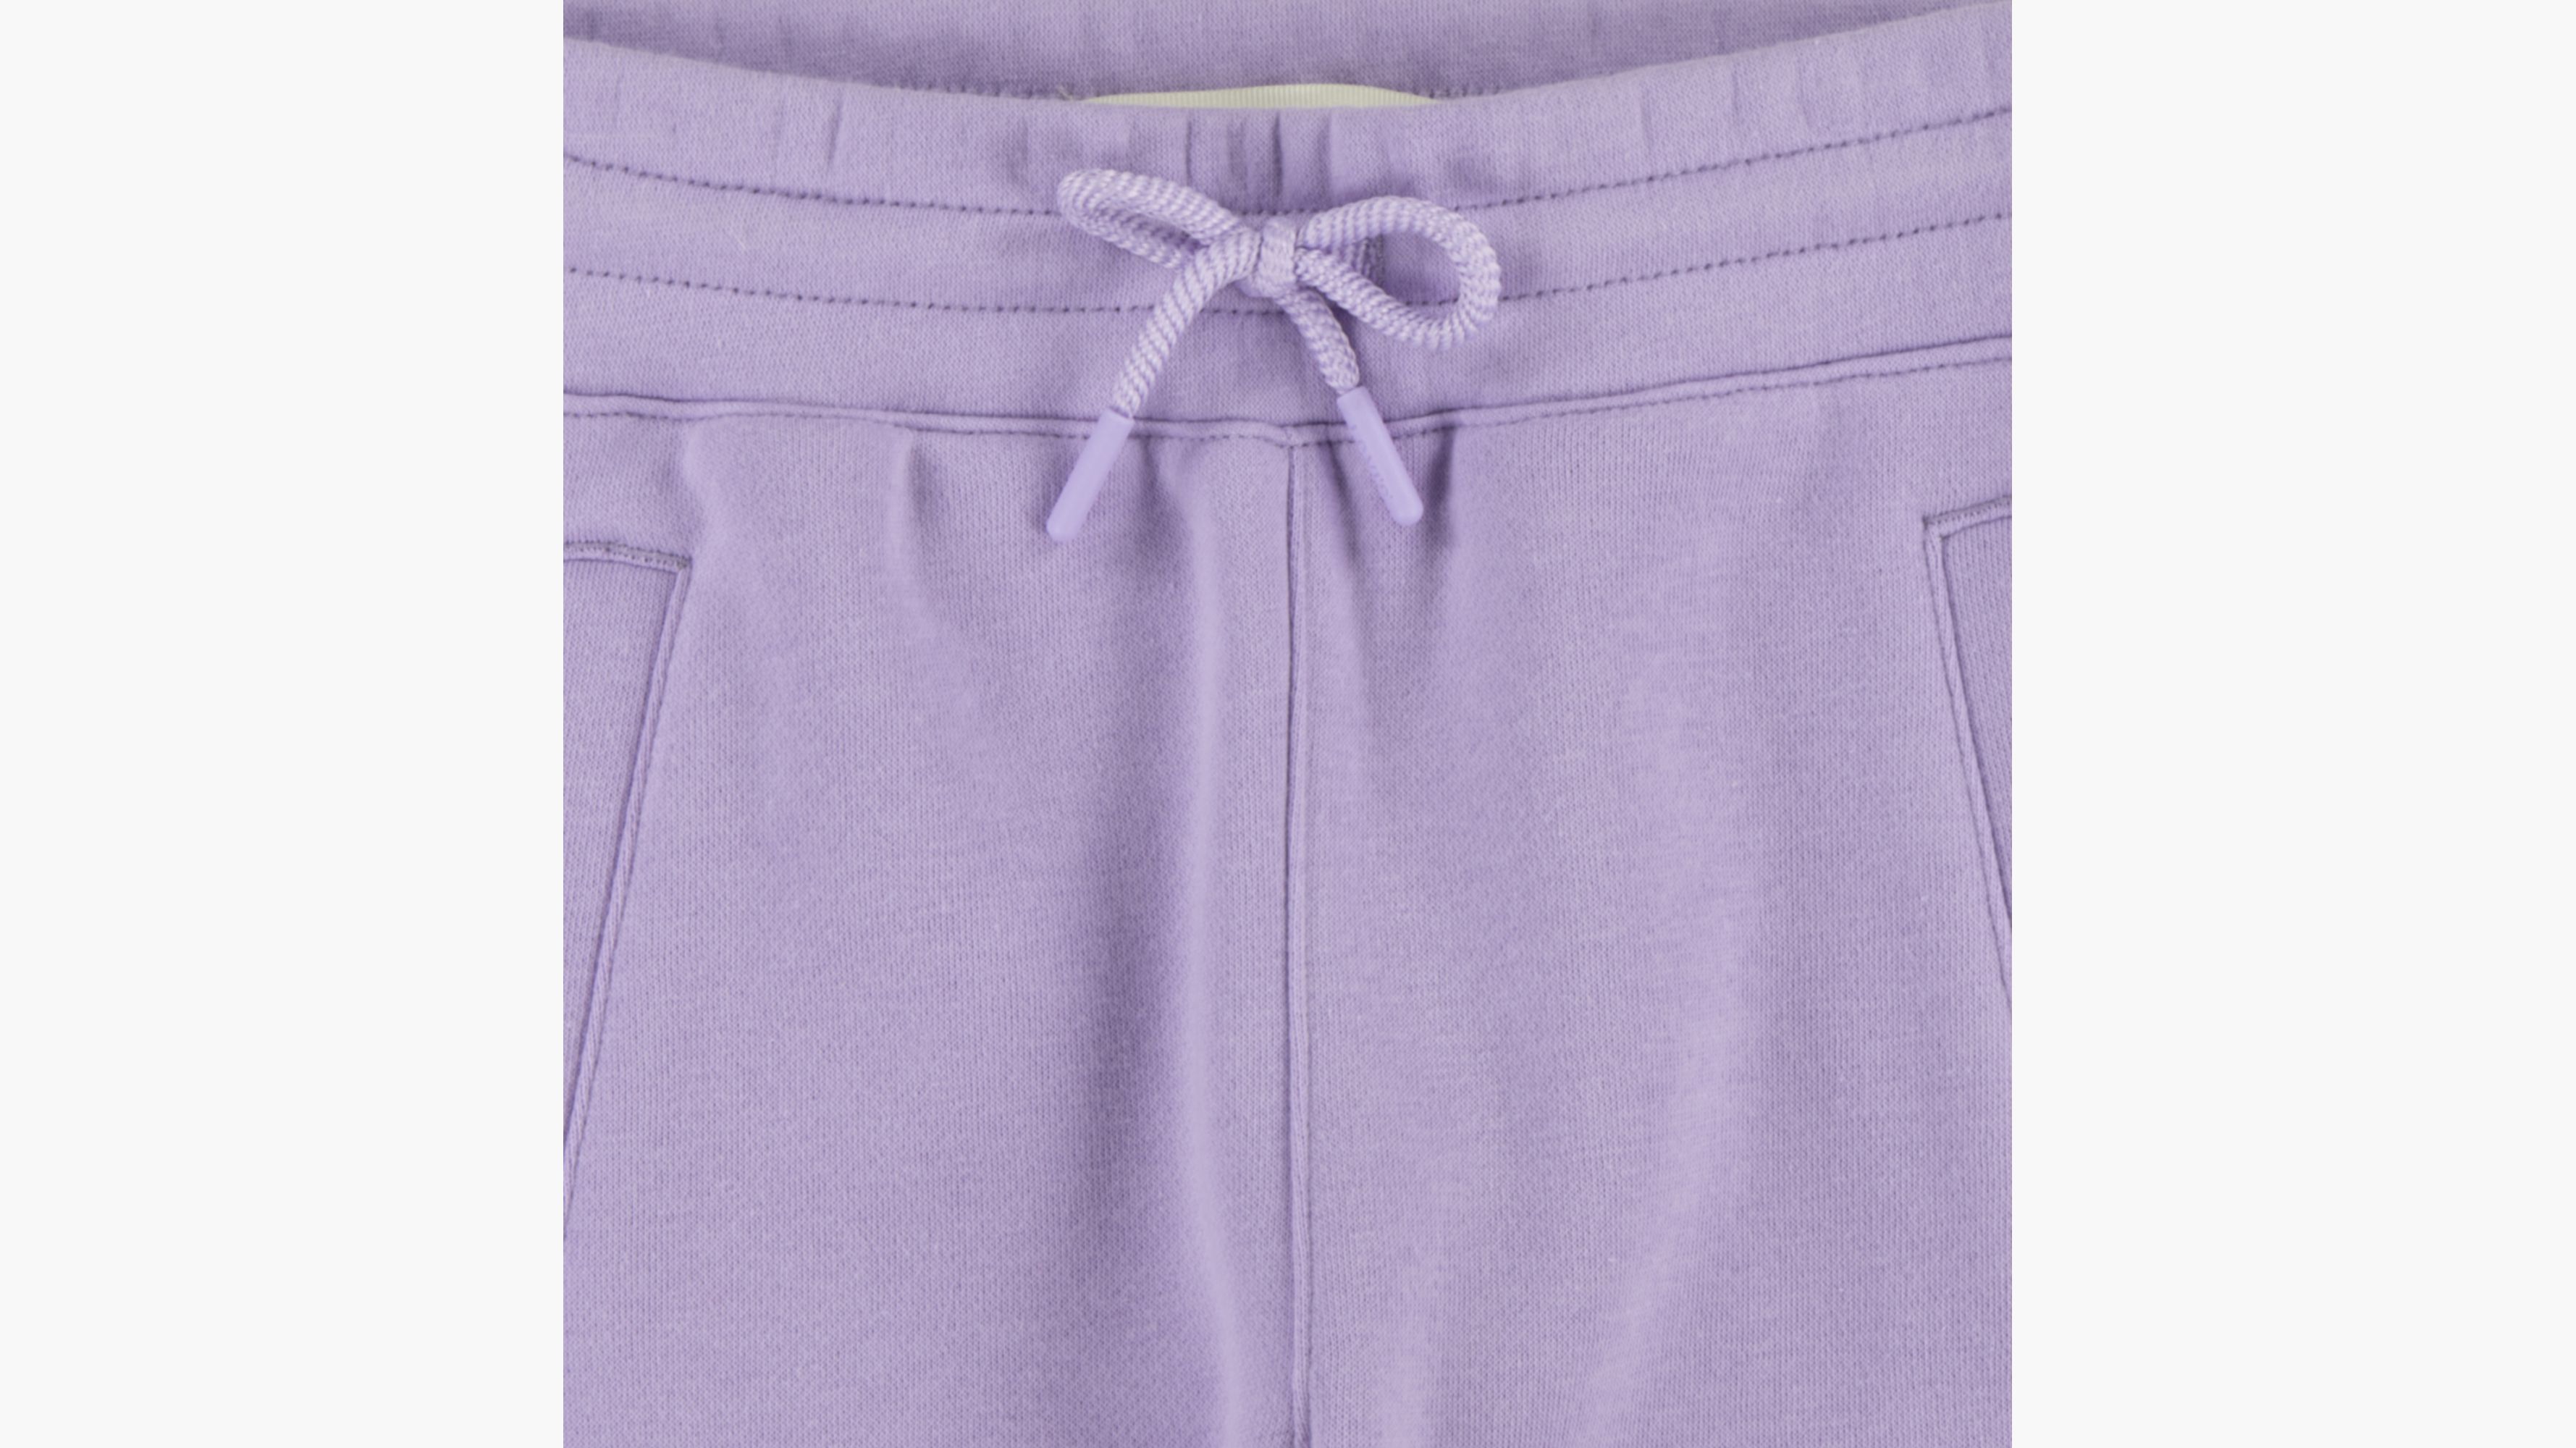 Womens Sweatpants - size XL - Color purple - Baleaf - DR Trouble